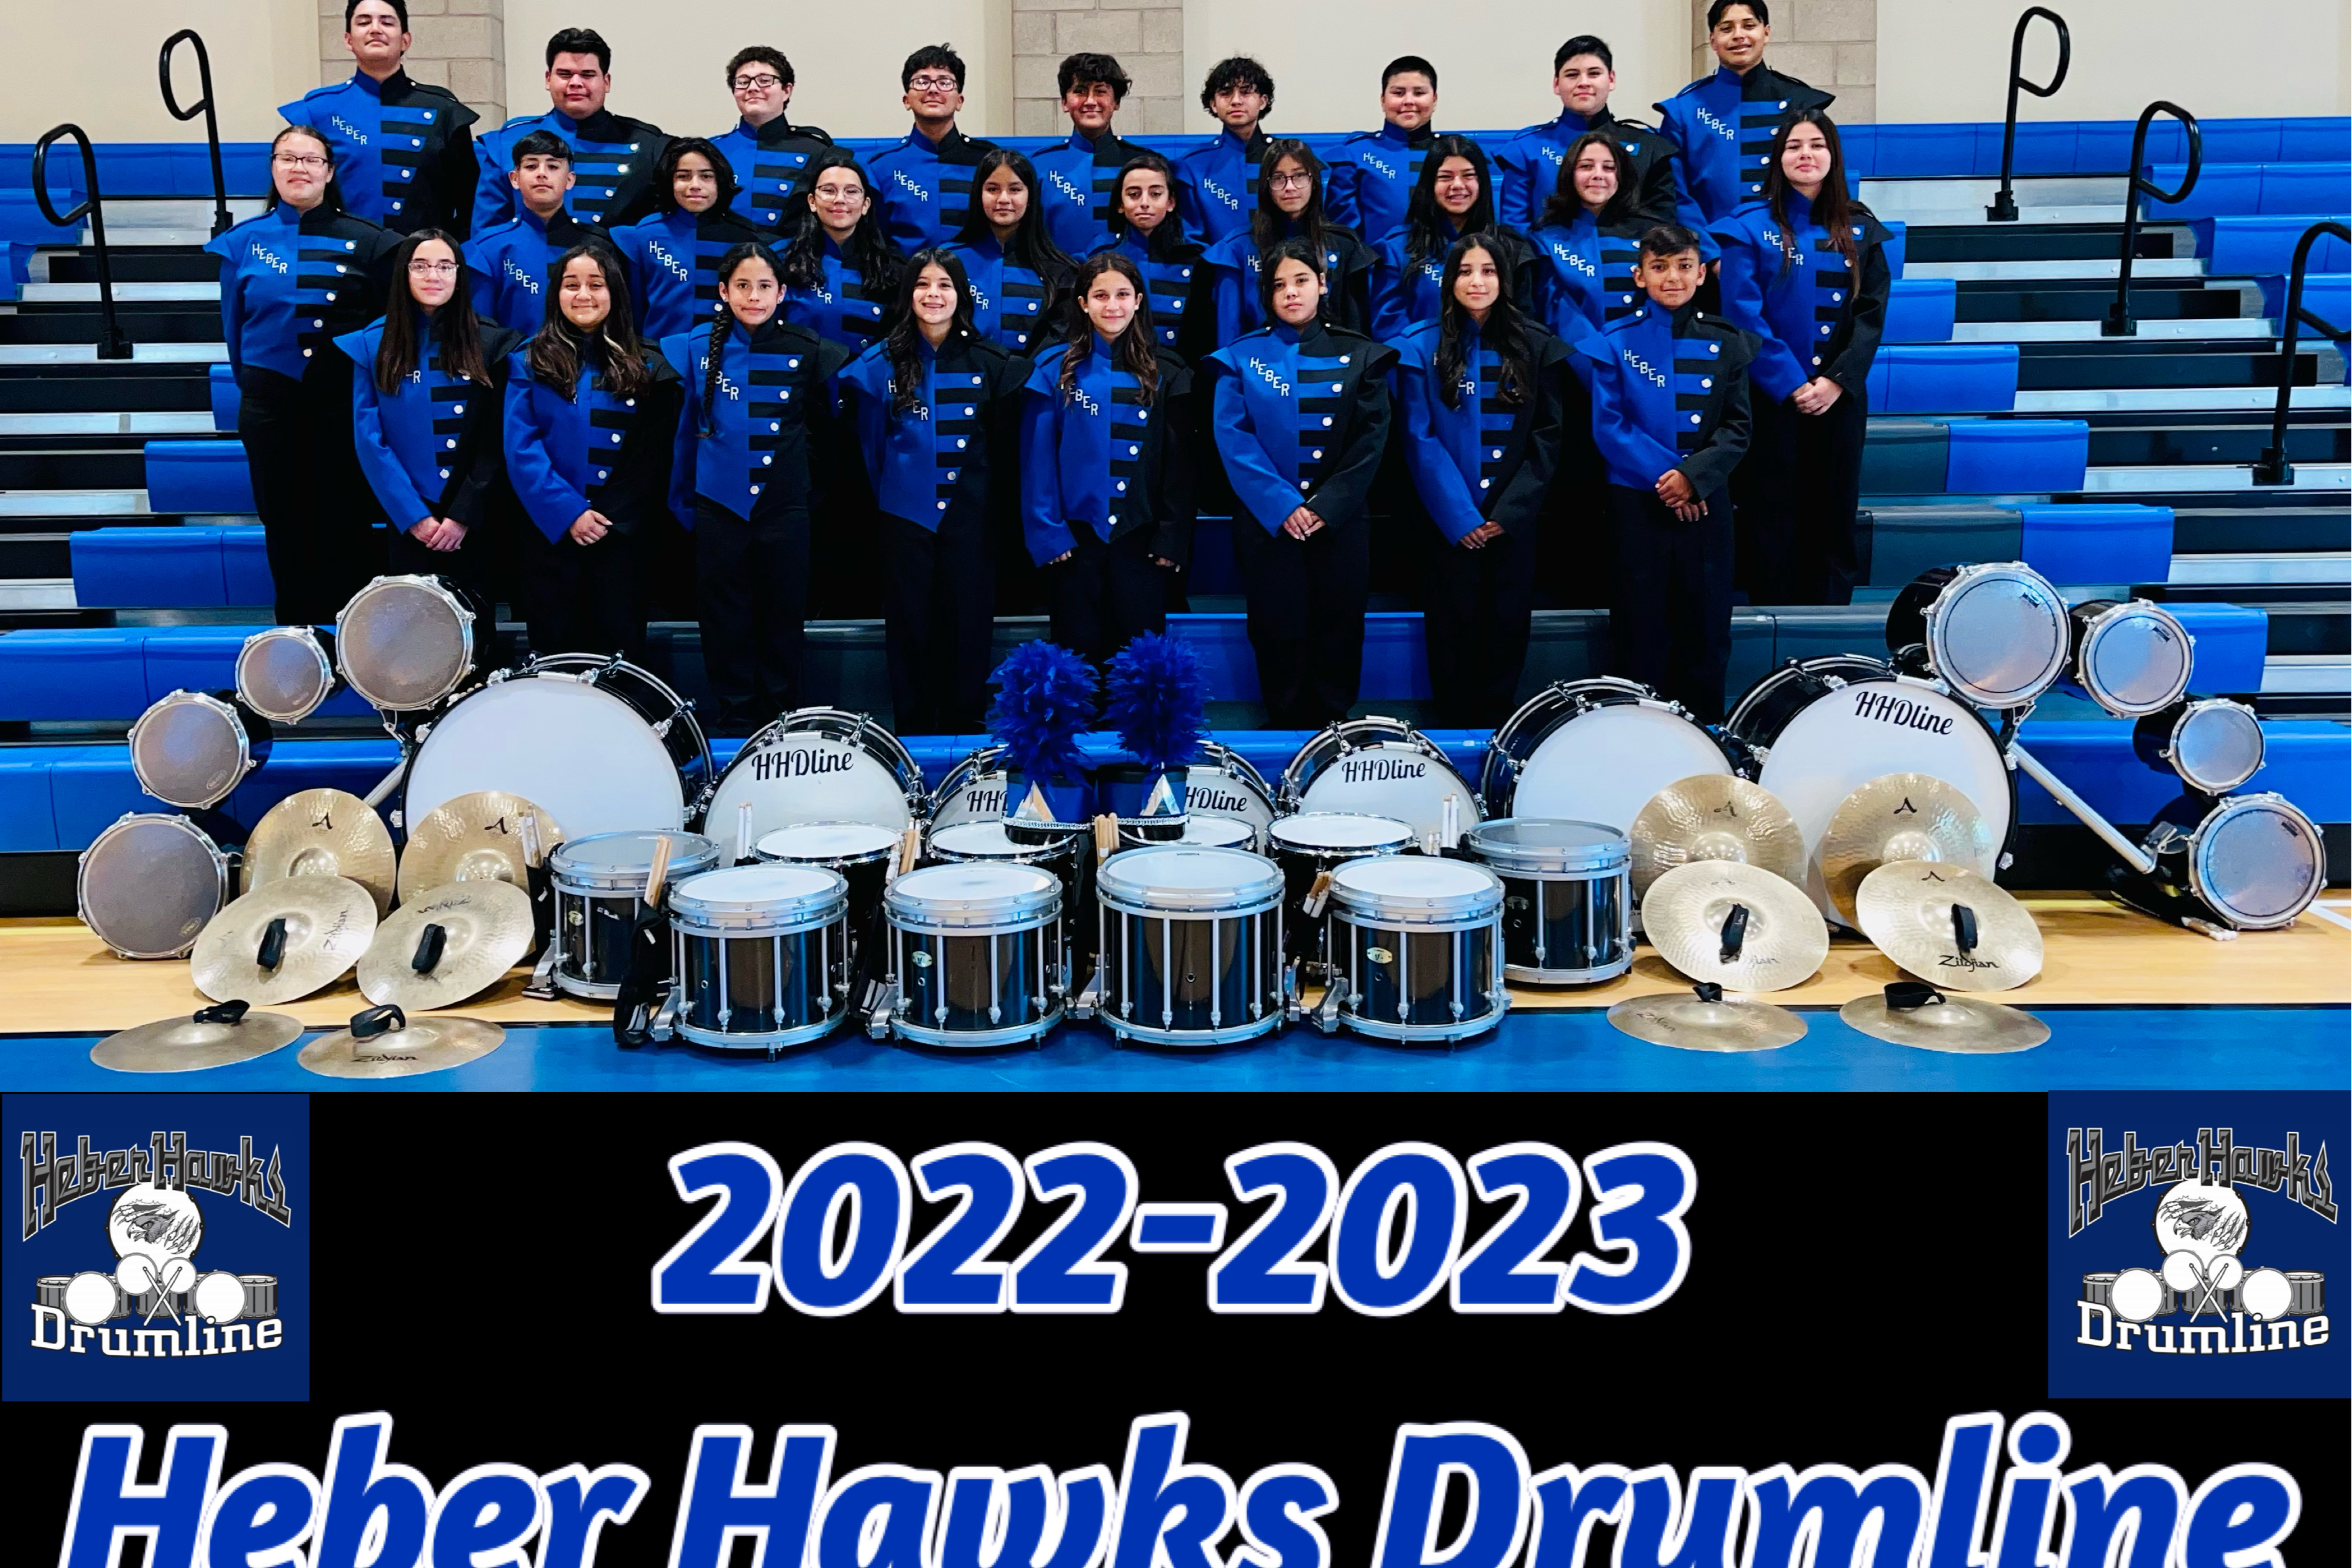 Drumline 2022-2023